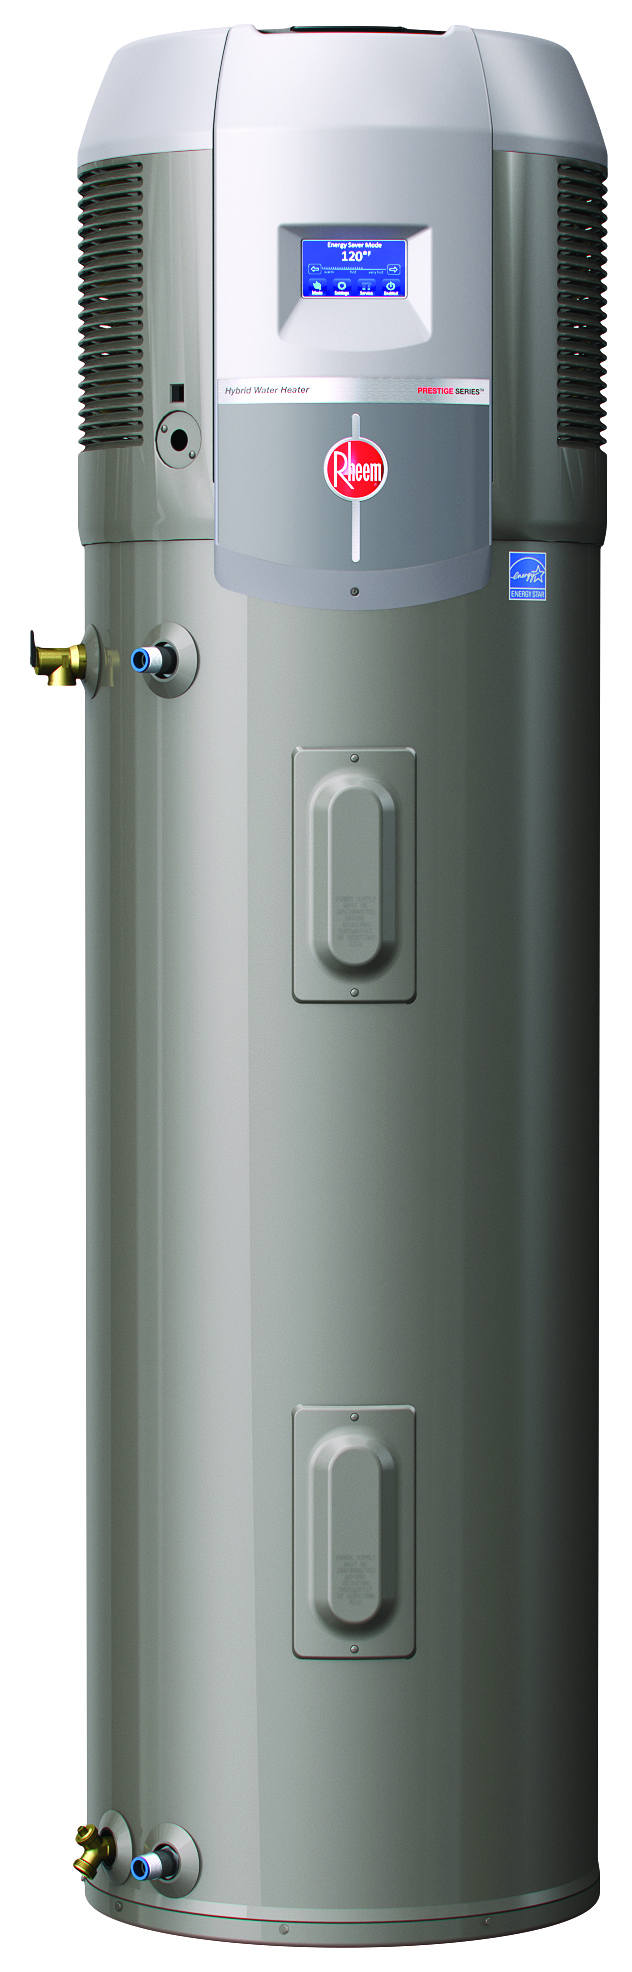 Rheem Debuts The Prestige Series Hybrid Electric Heat Pump Water Heater